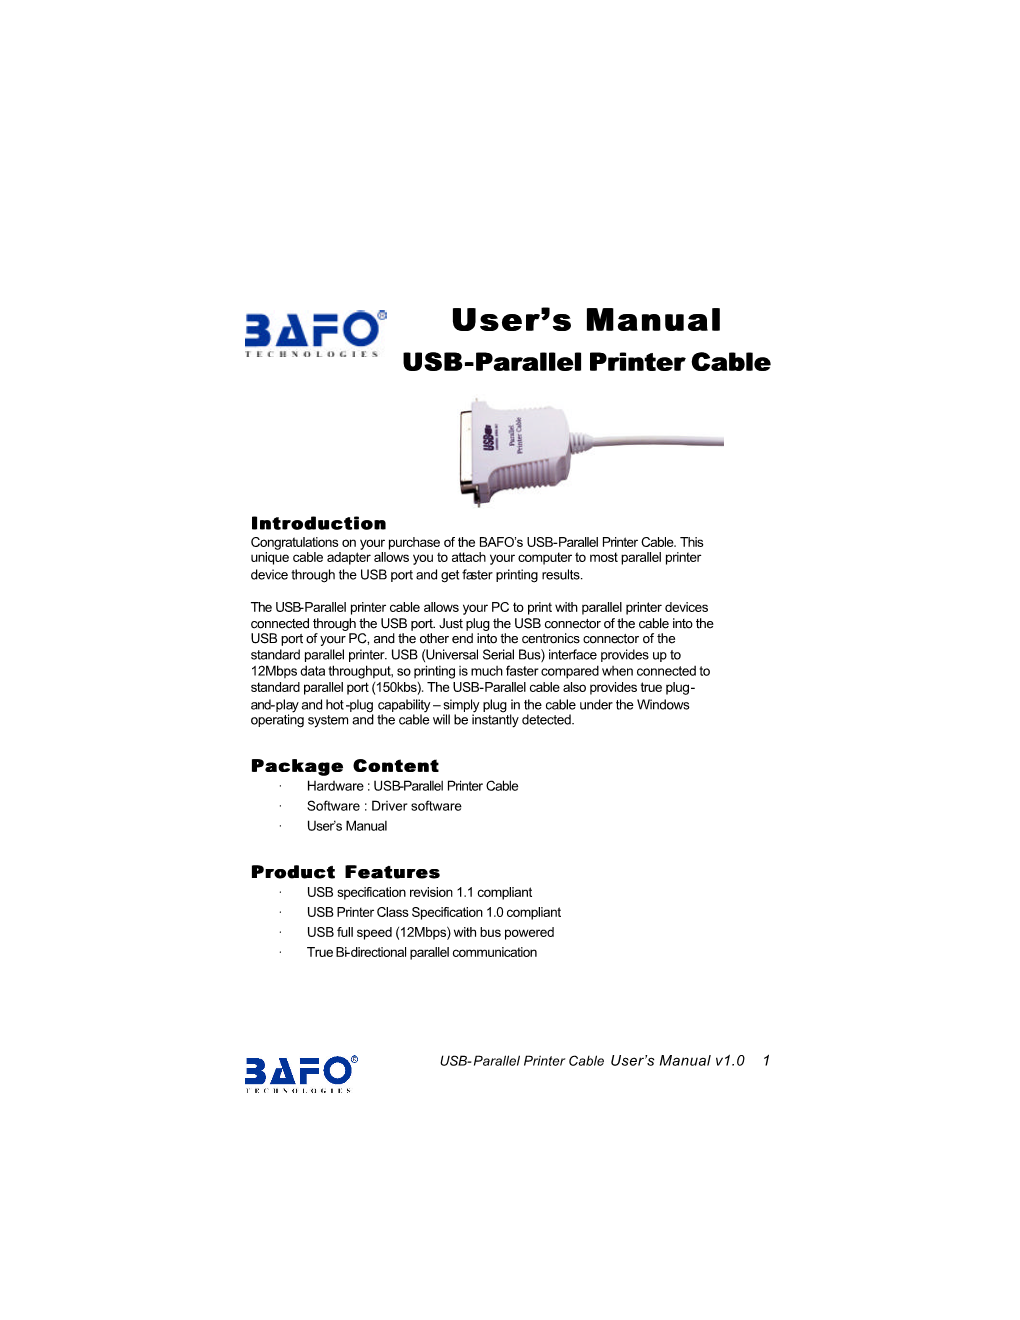 User's Manual User's Manual